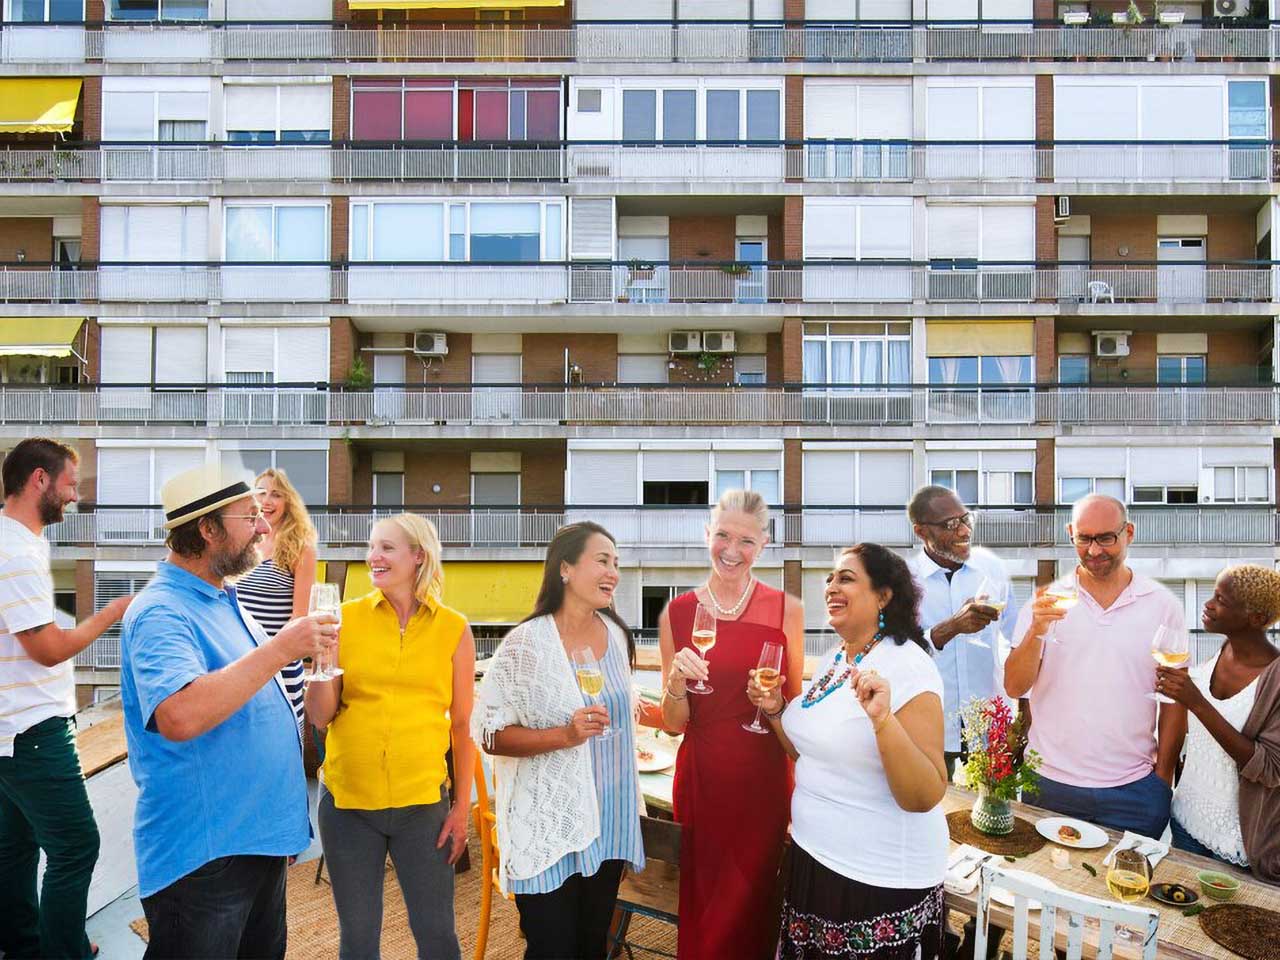 Un groupe de personnes prend l'apéritif sur une terrasse donnant sur un immeuble.